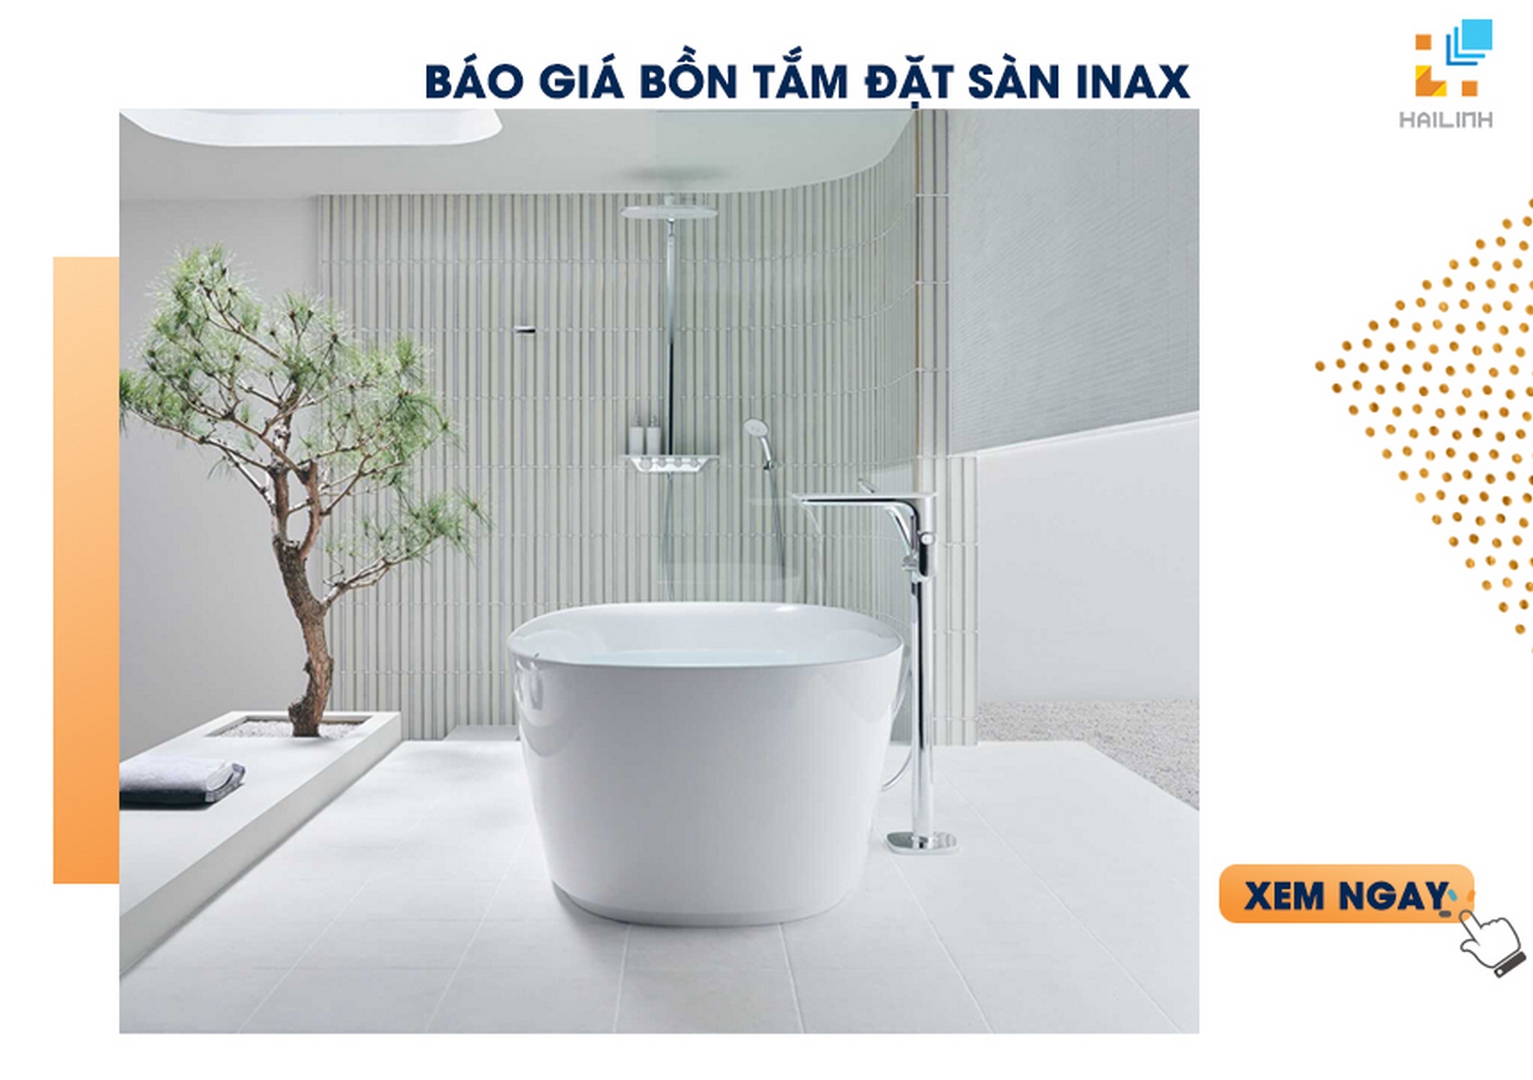 Báo giá bồn tắm đặt sàn INAX